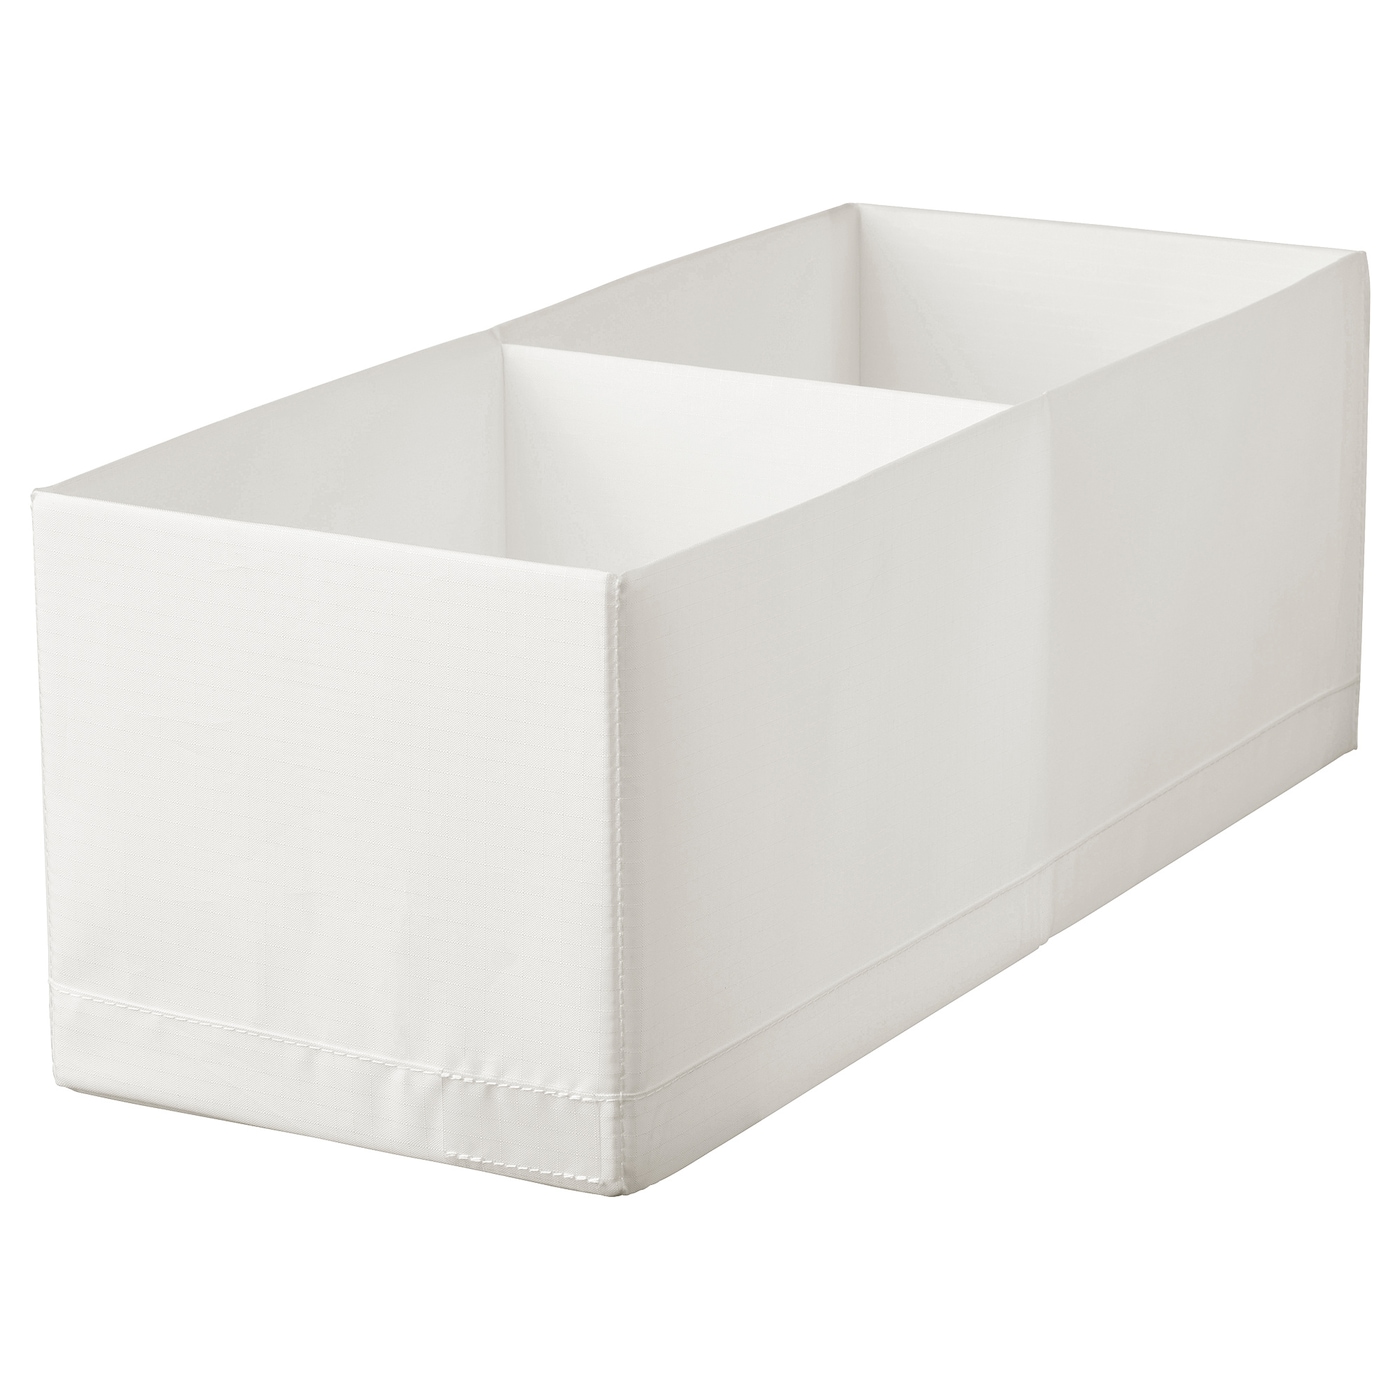 STUK СТУК Ящик с отделениями, белый, 20x51x18 см IKEA stuk стук органайзер белый 26x20x6 см ikea